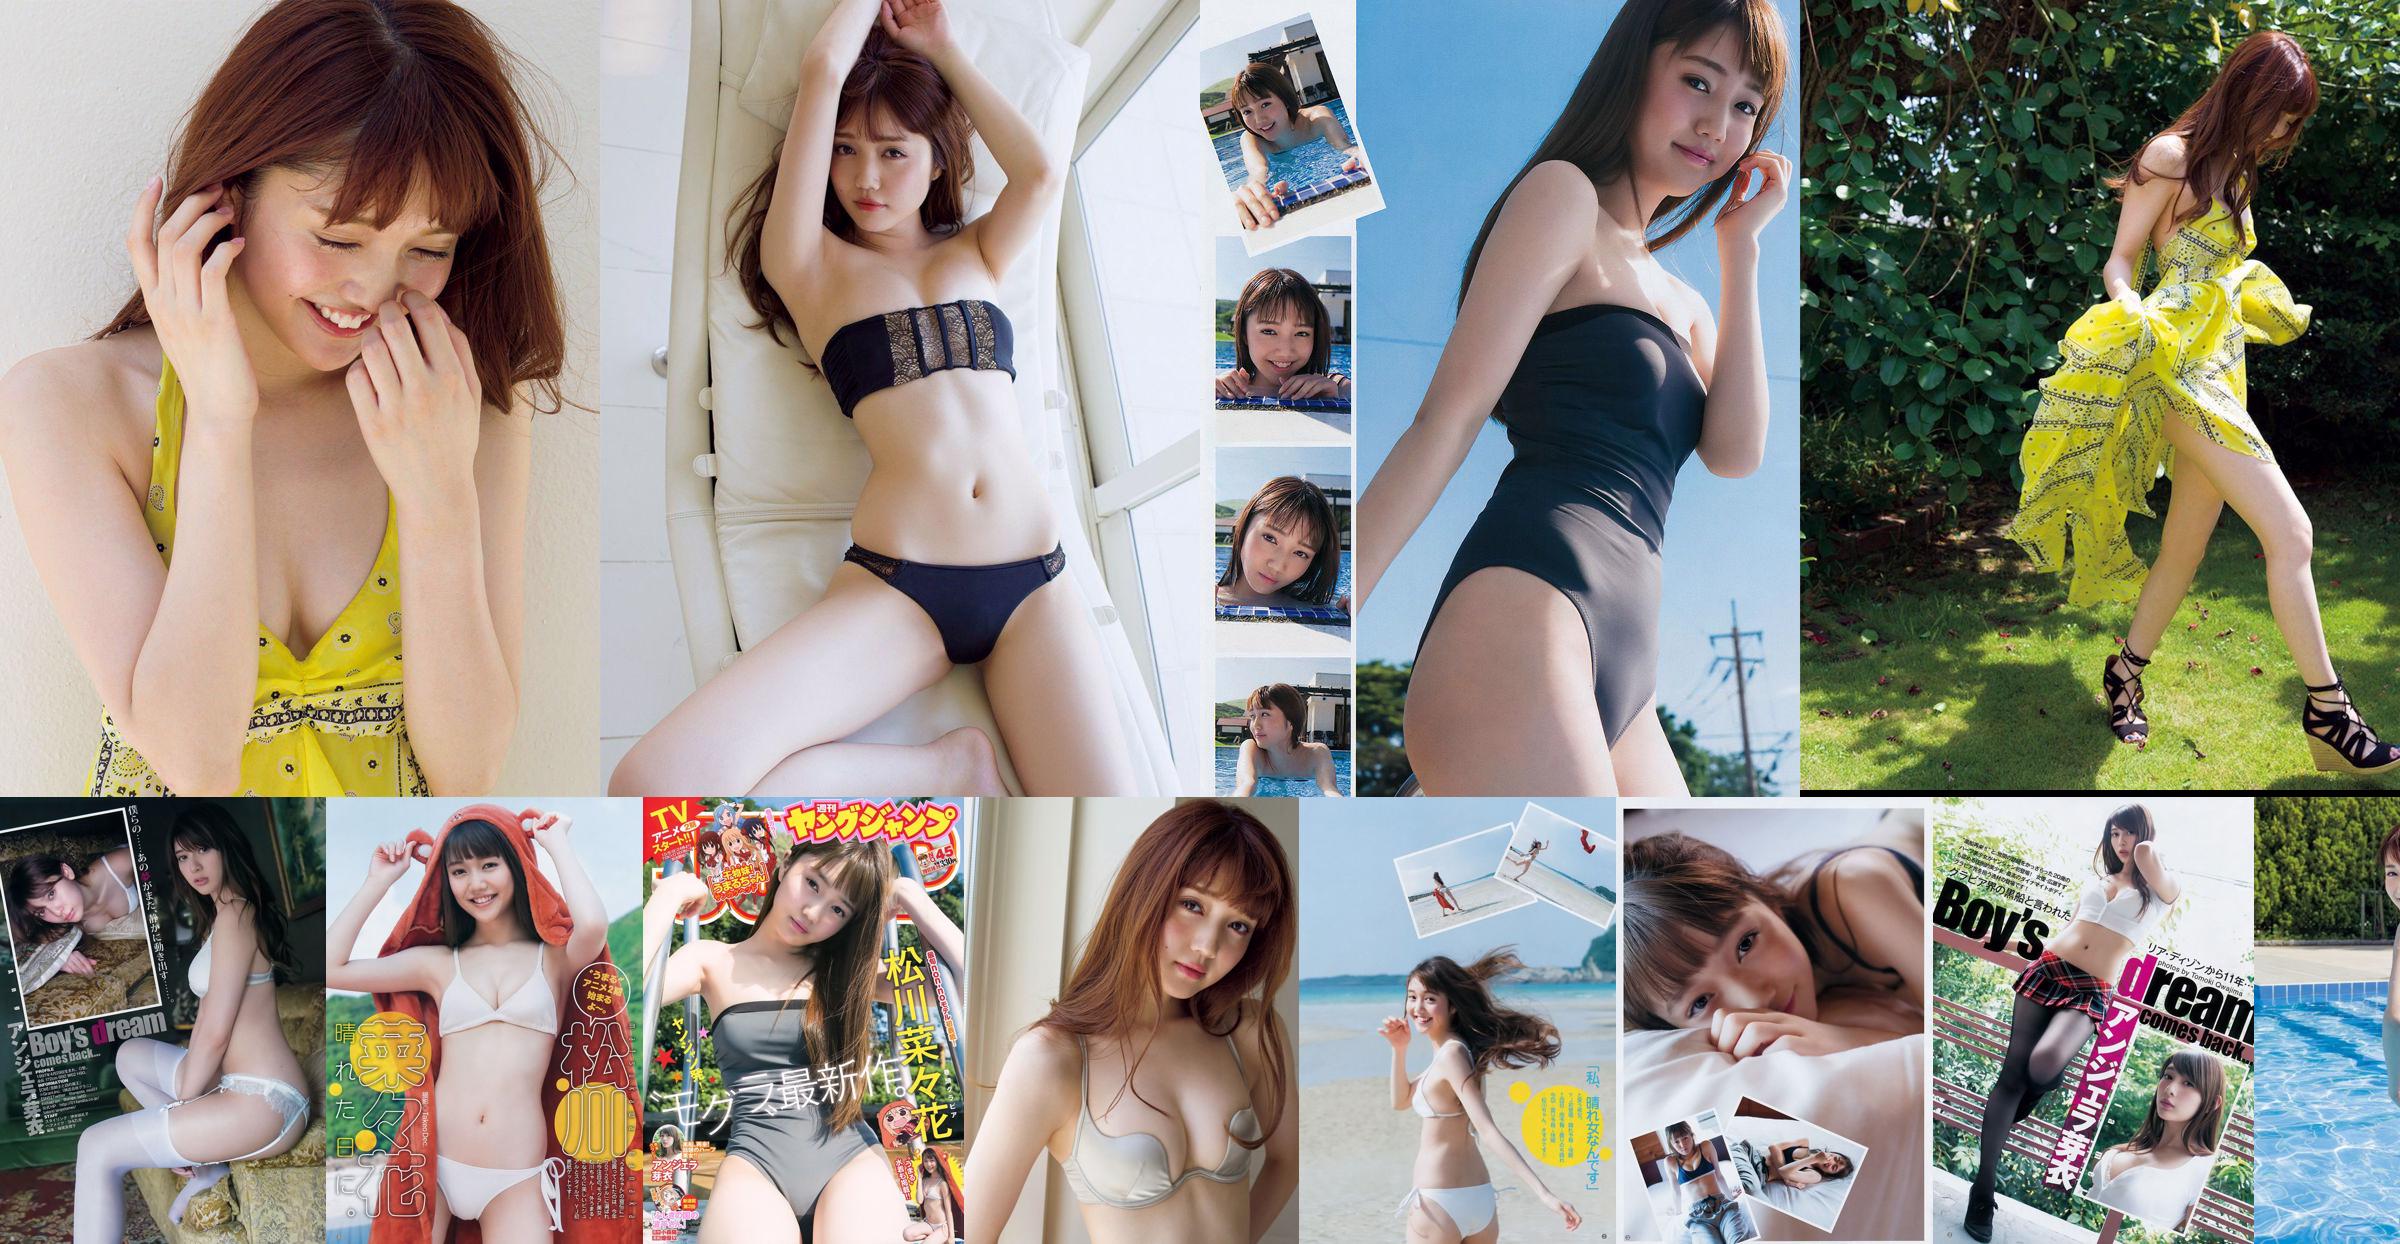 [วันศุกร์] Nanaka Matsukawa << นางแบบและชุดว่ายน้ำยอดนิยมออกเดทกับเสน่ห์ทางเพศอายุ 20 ปีที่ยอดเยี่ยม (พร้อมวิดีโอ) >> รูปภาพ No.de08a5 หน้า 1